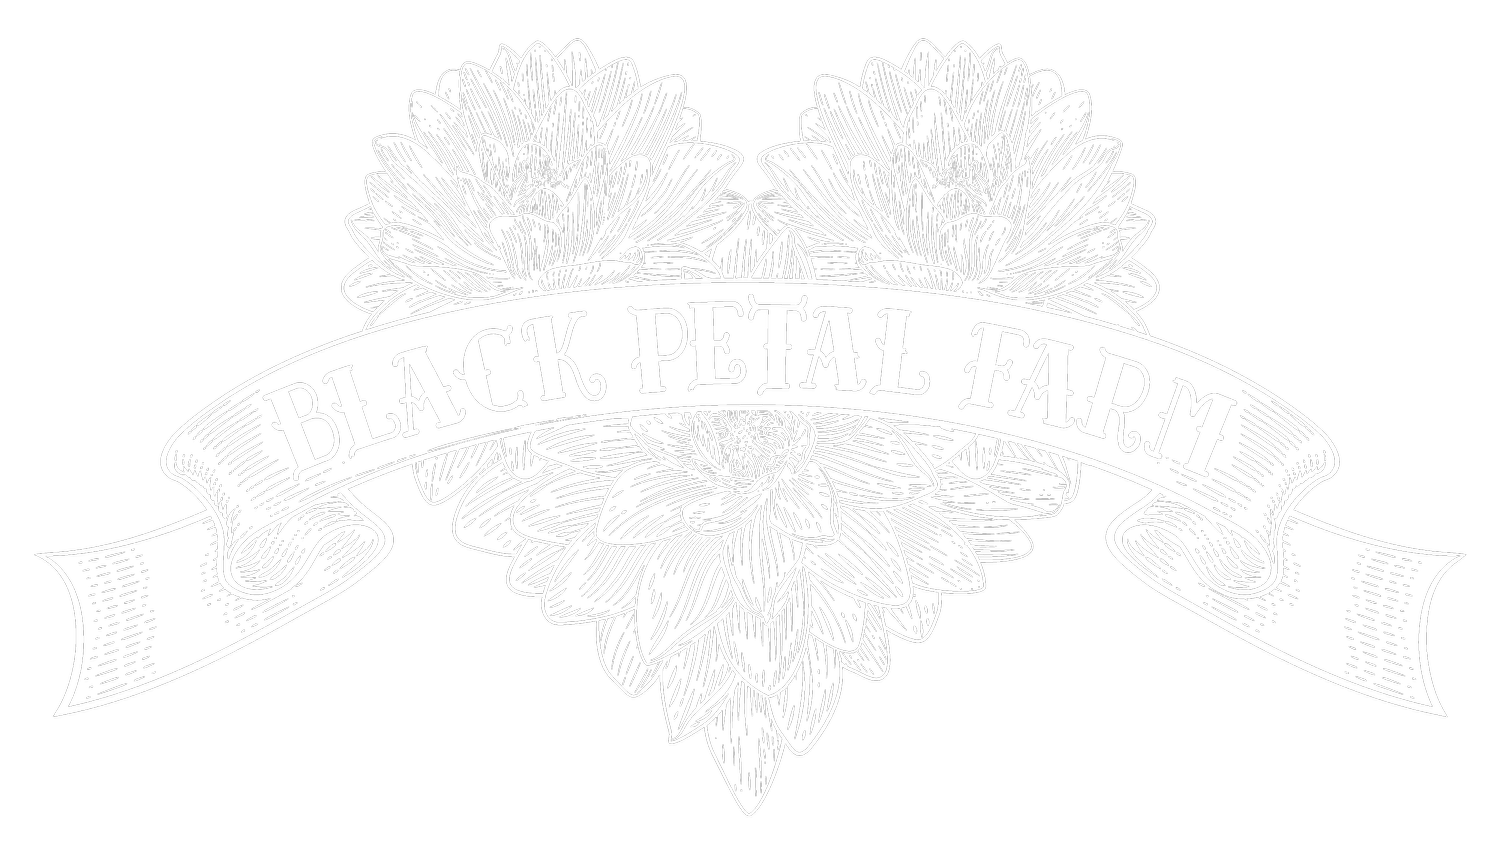 Black Petal Farm